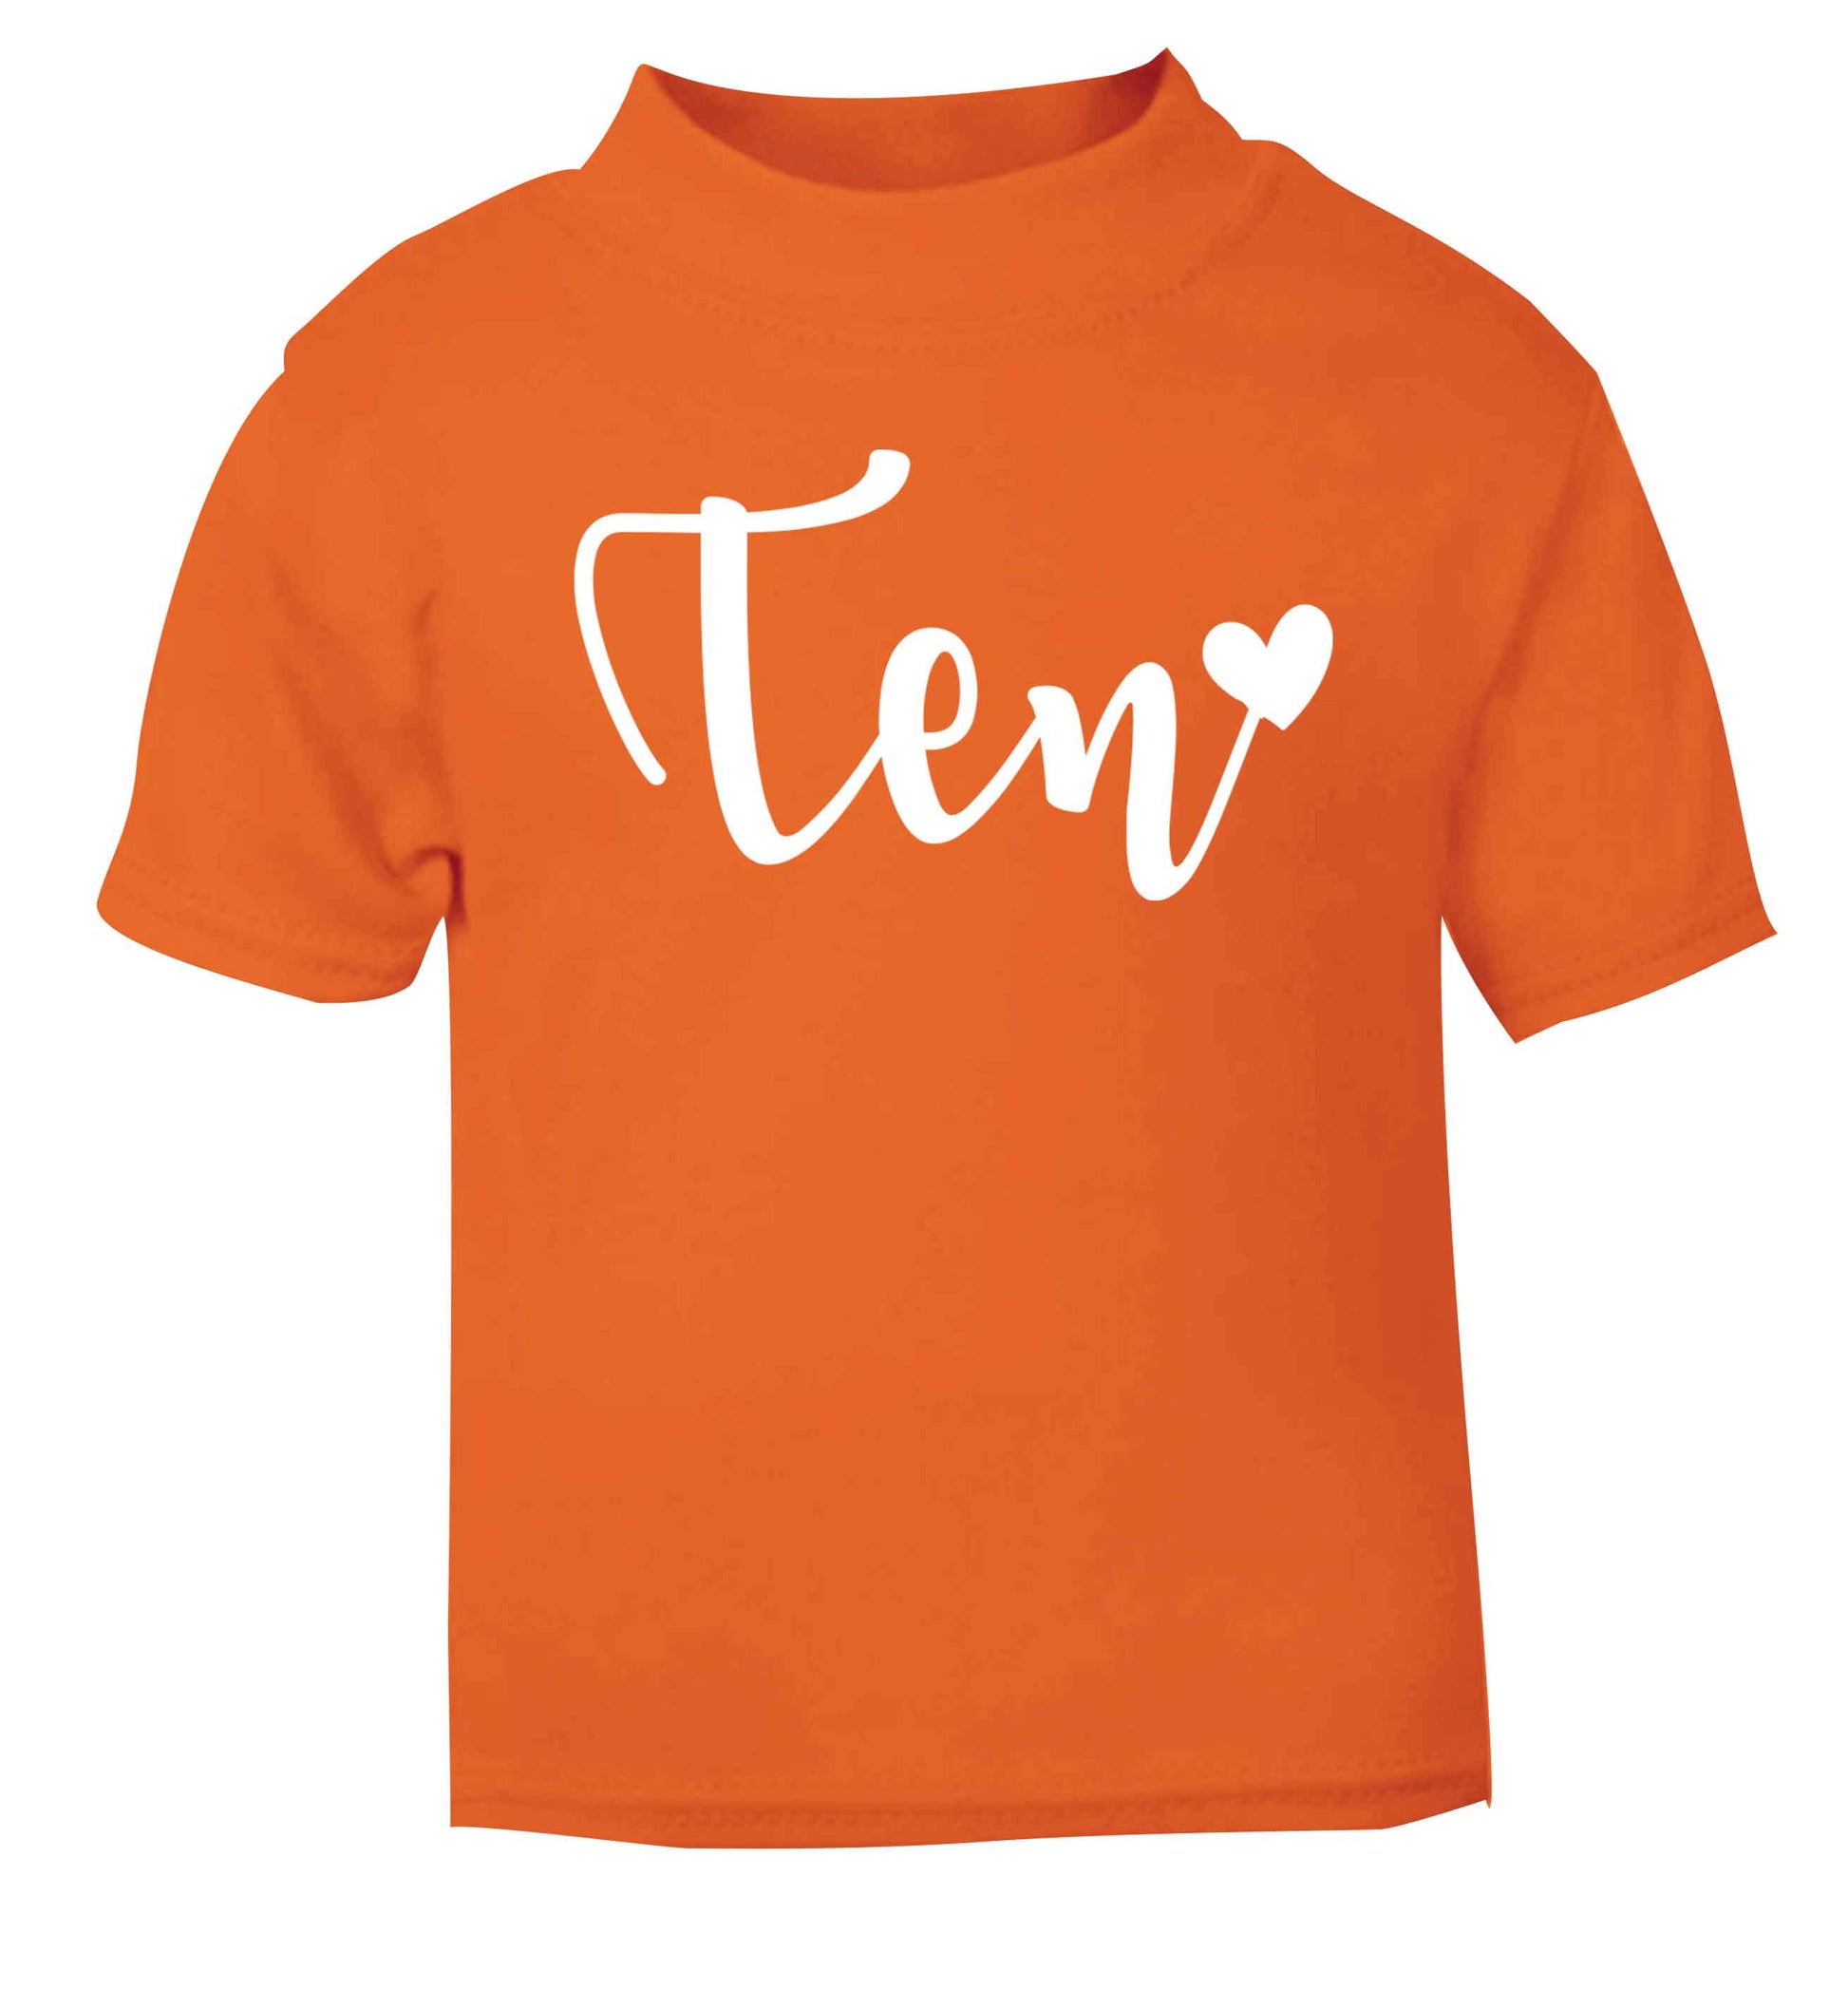 Ten and heart orange baby toddler Tshirt 2 Years